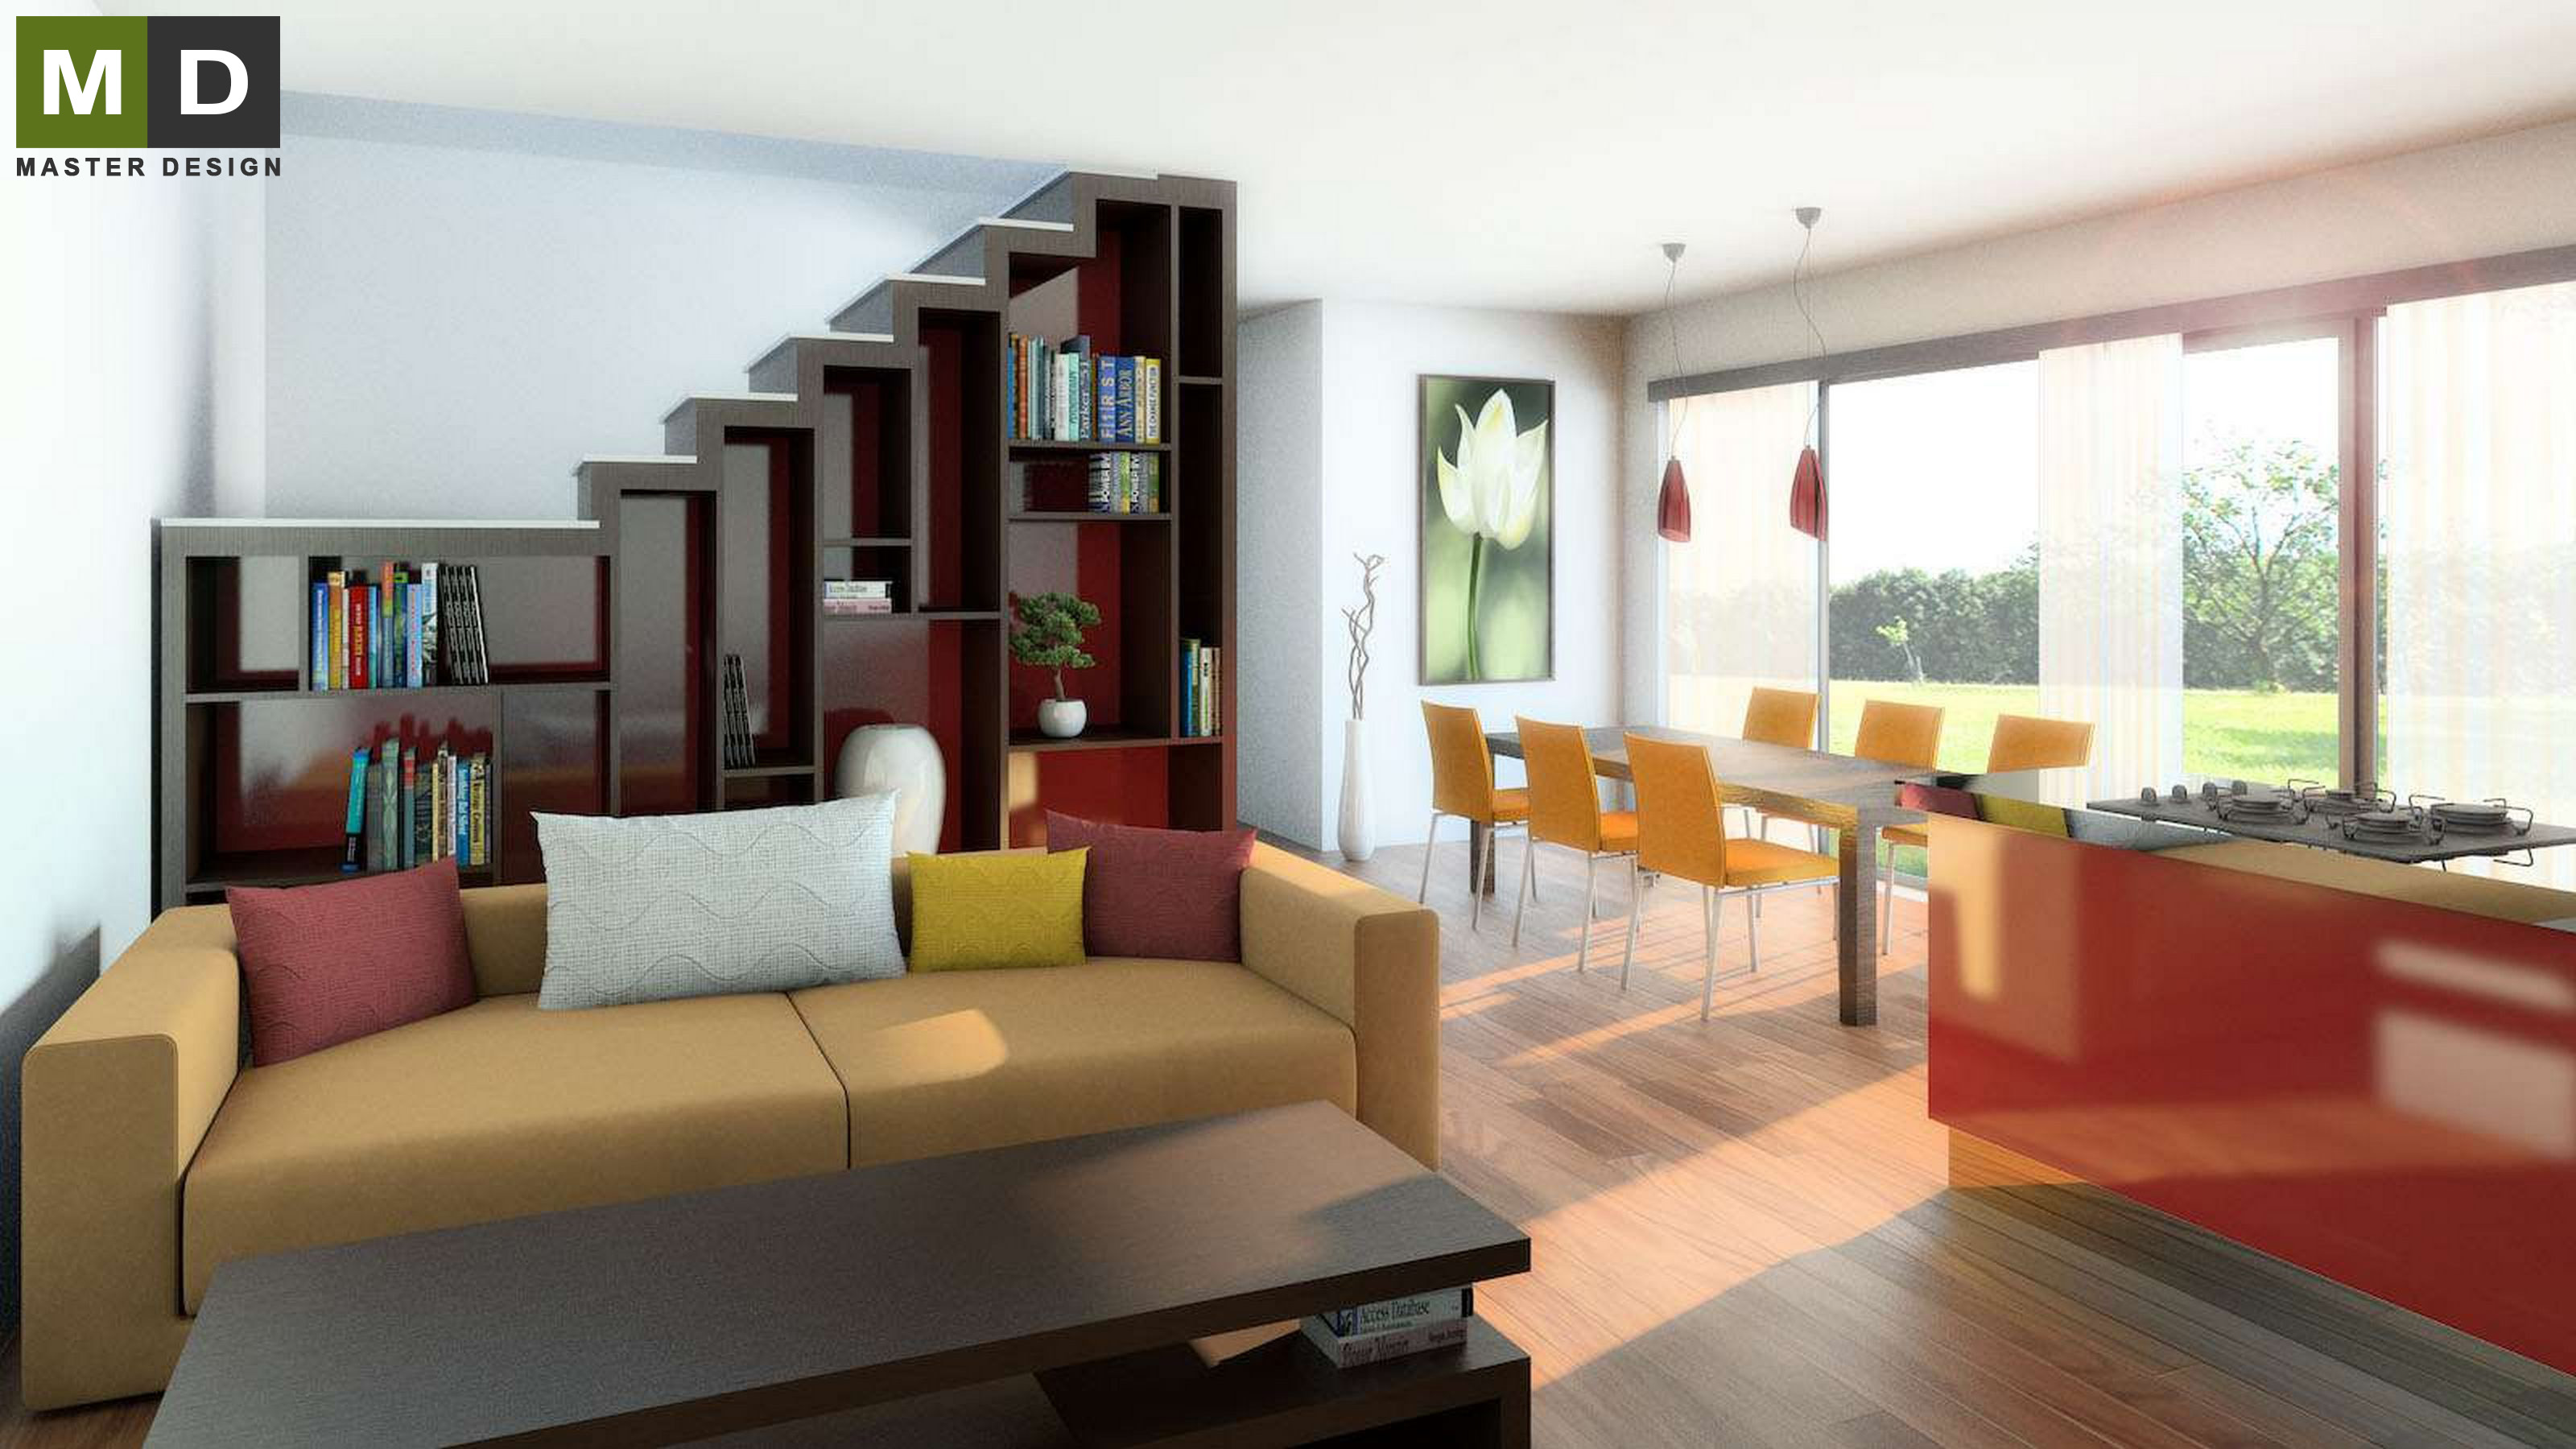 Vizualizace 1 - Interiér obývacího pokoje se schodištěm - Developer ze Švýcarska